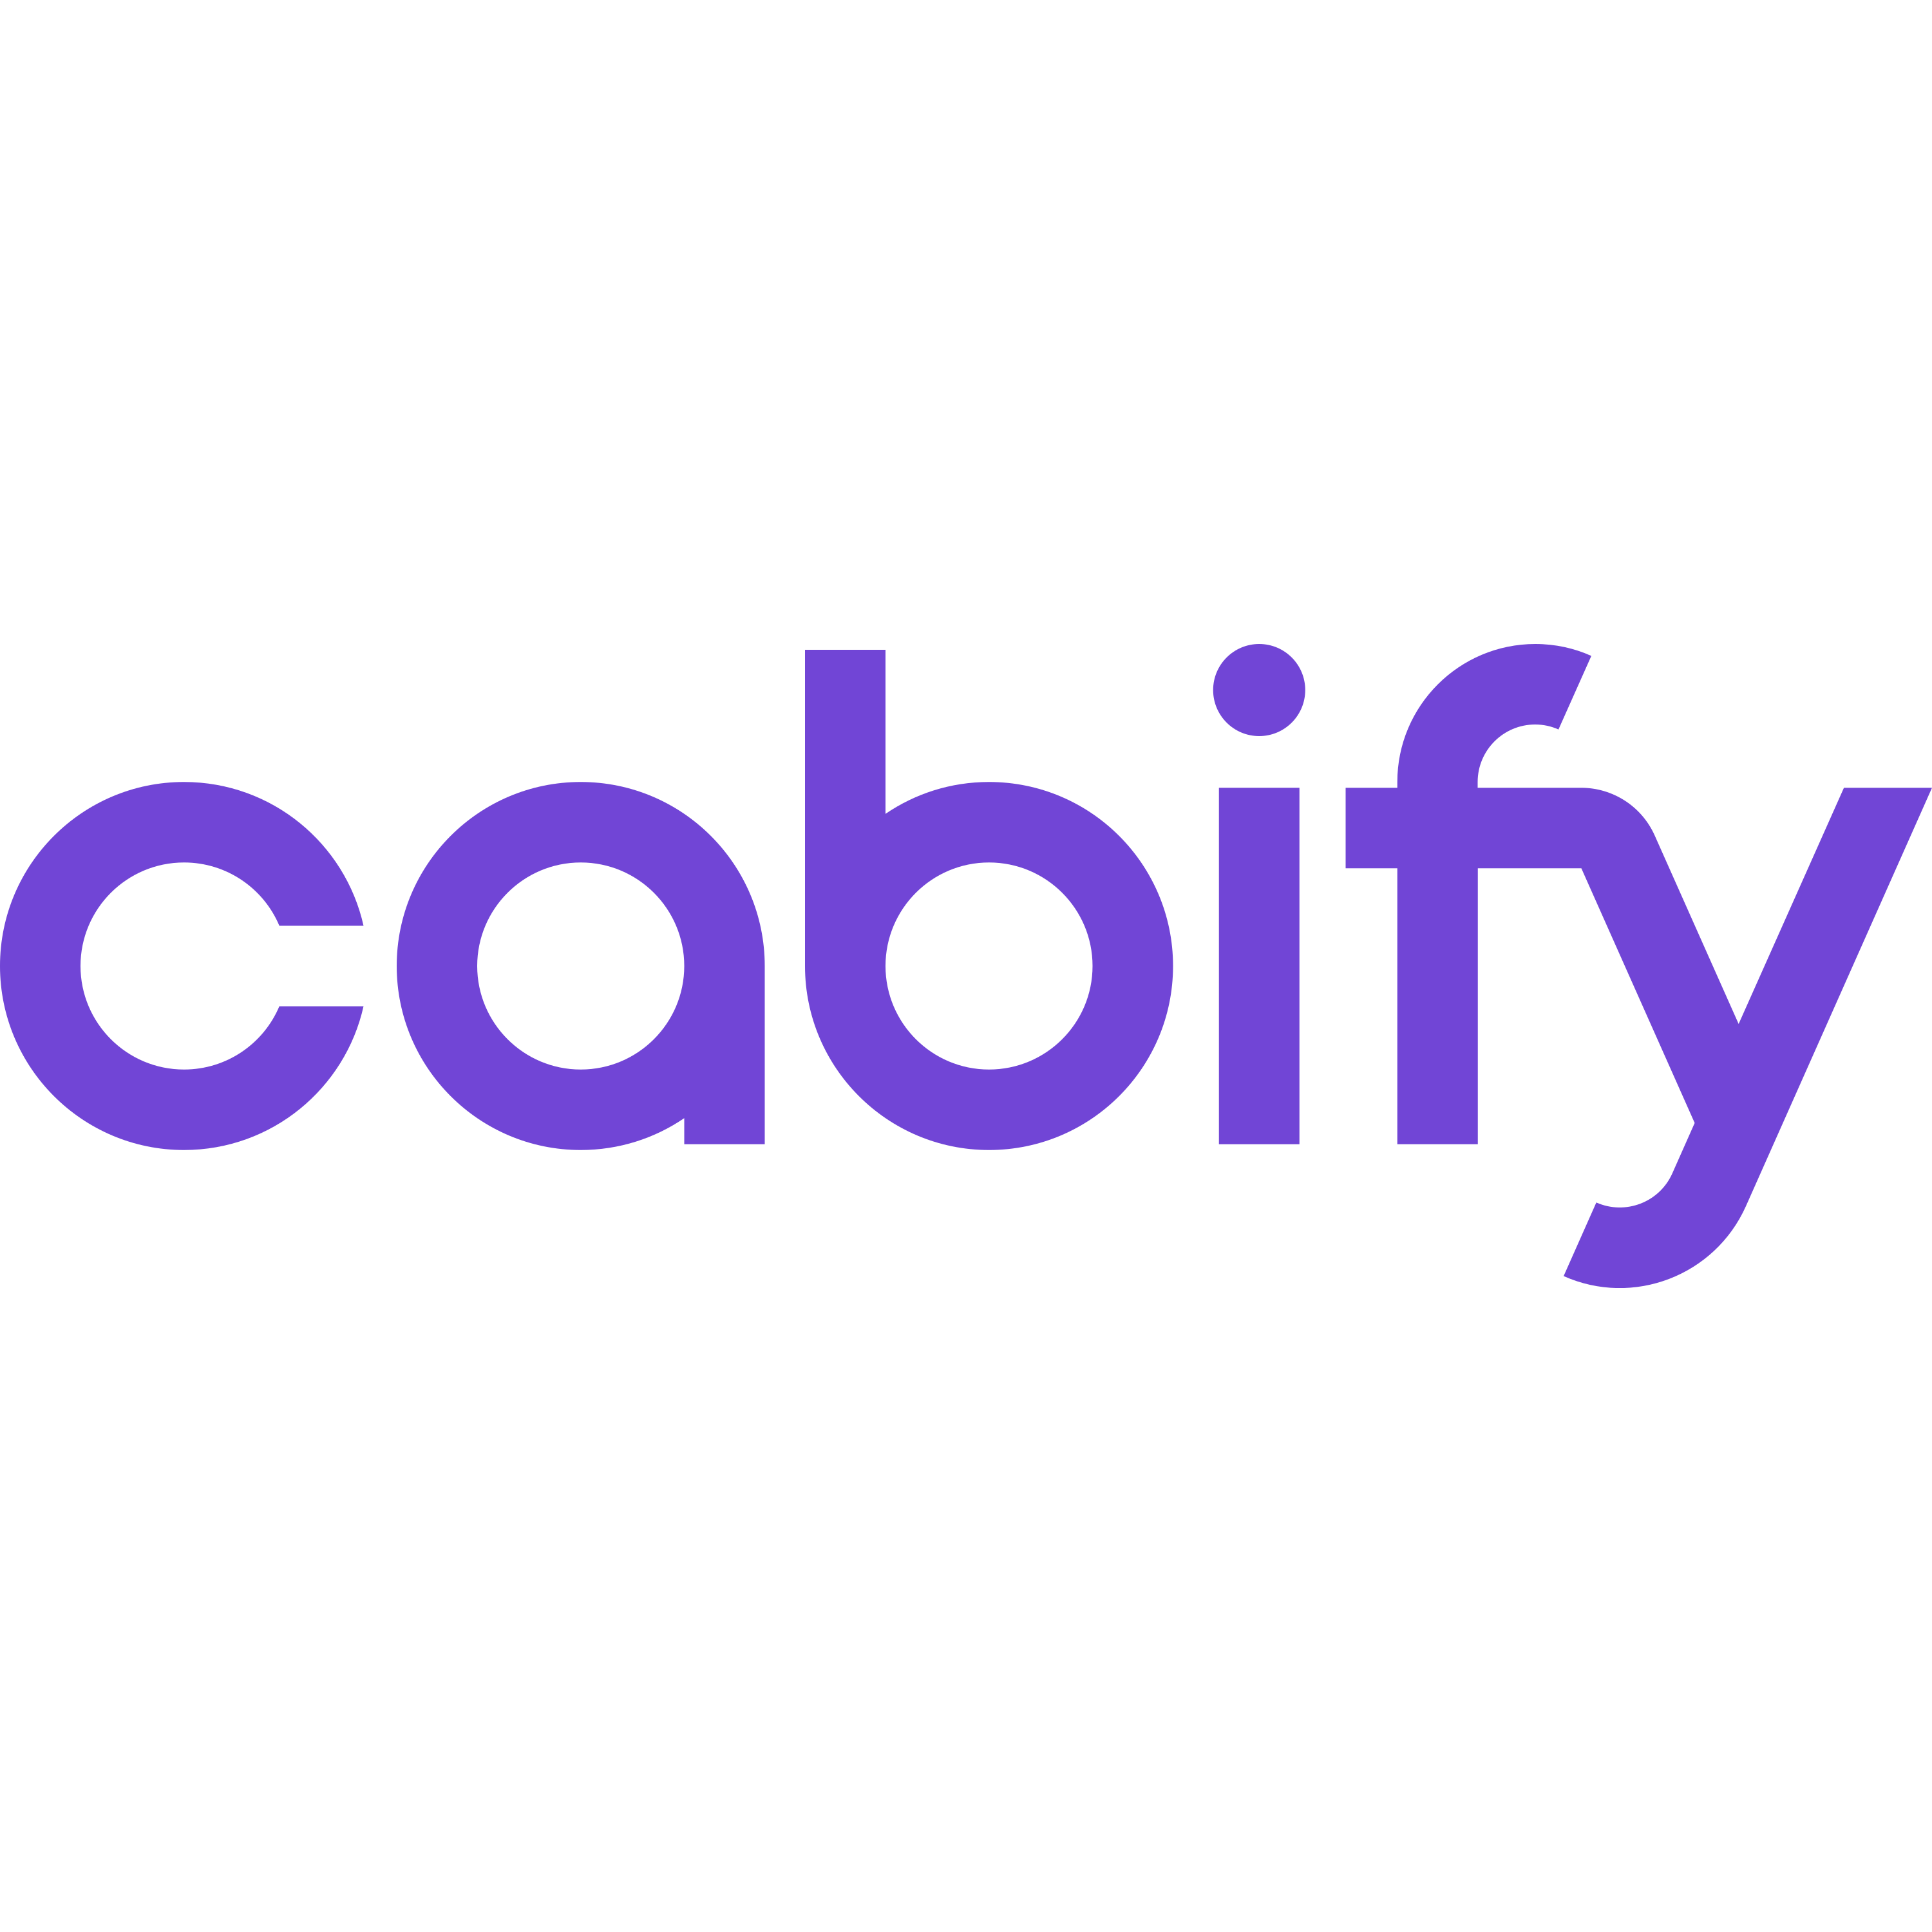 Cabify Logo  Transparent Image